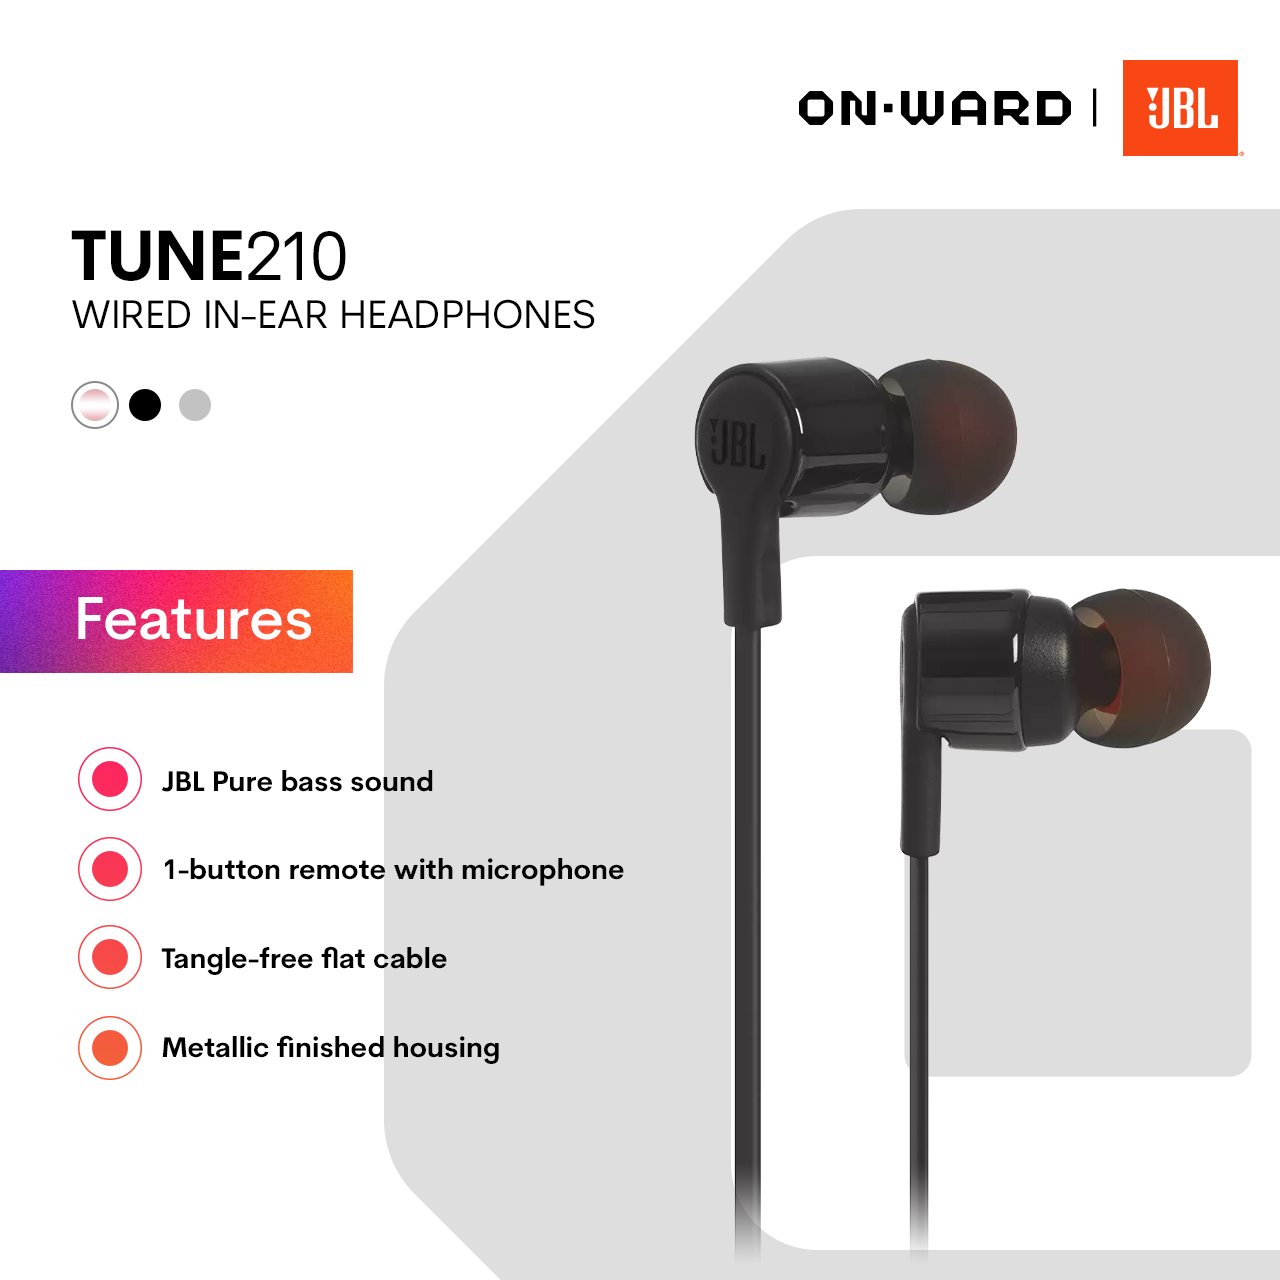 PH In-ear - OnWard JBL Tune 210 headphones |